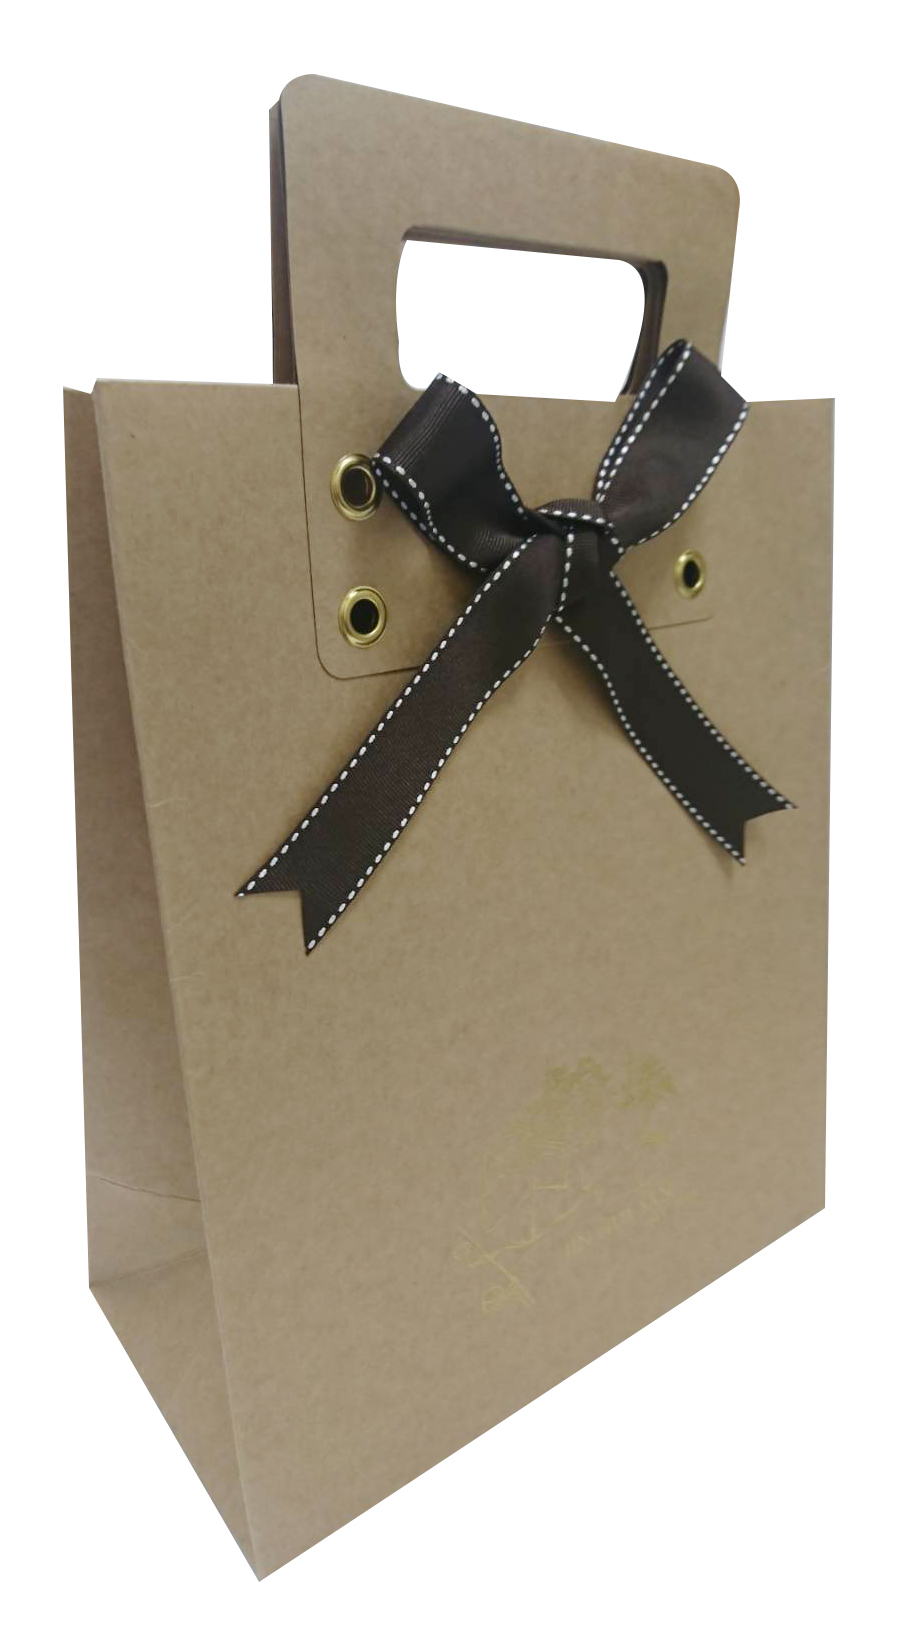 牛皮紙紙盒彩盒禮品包裝盒